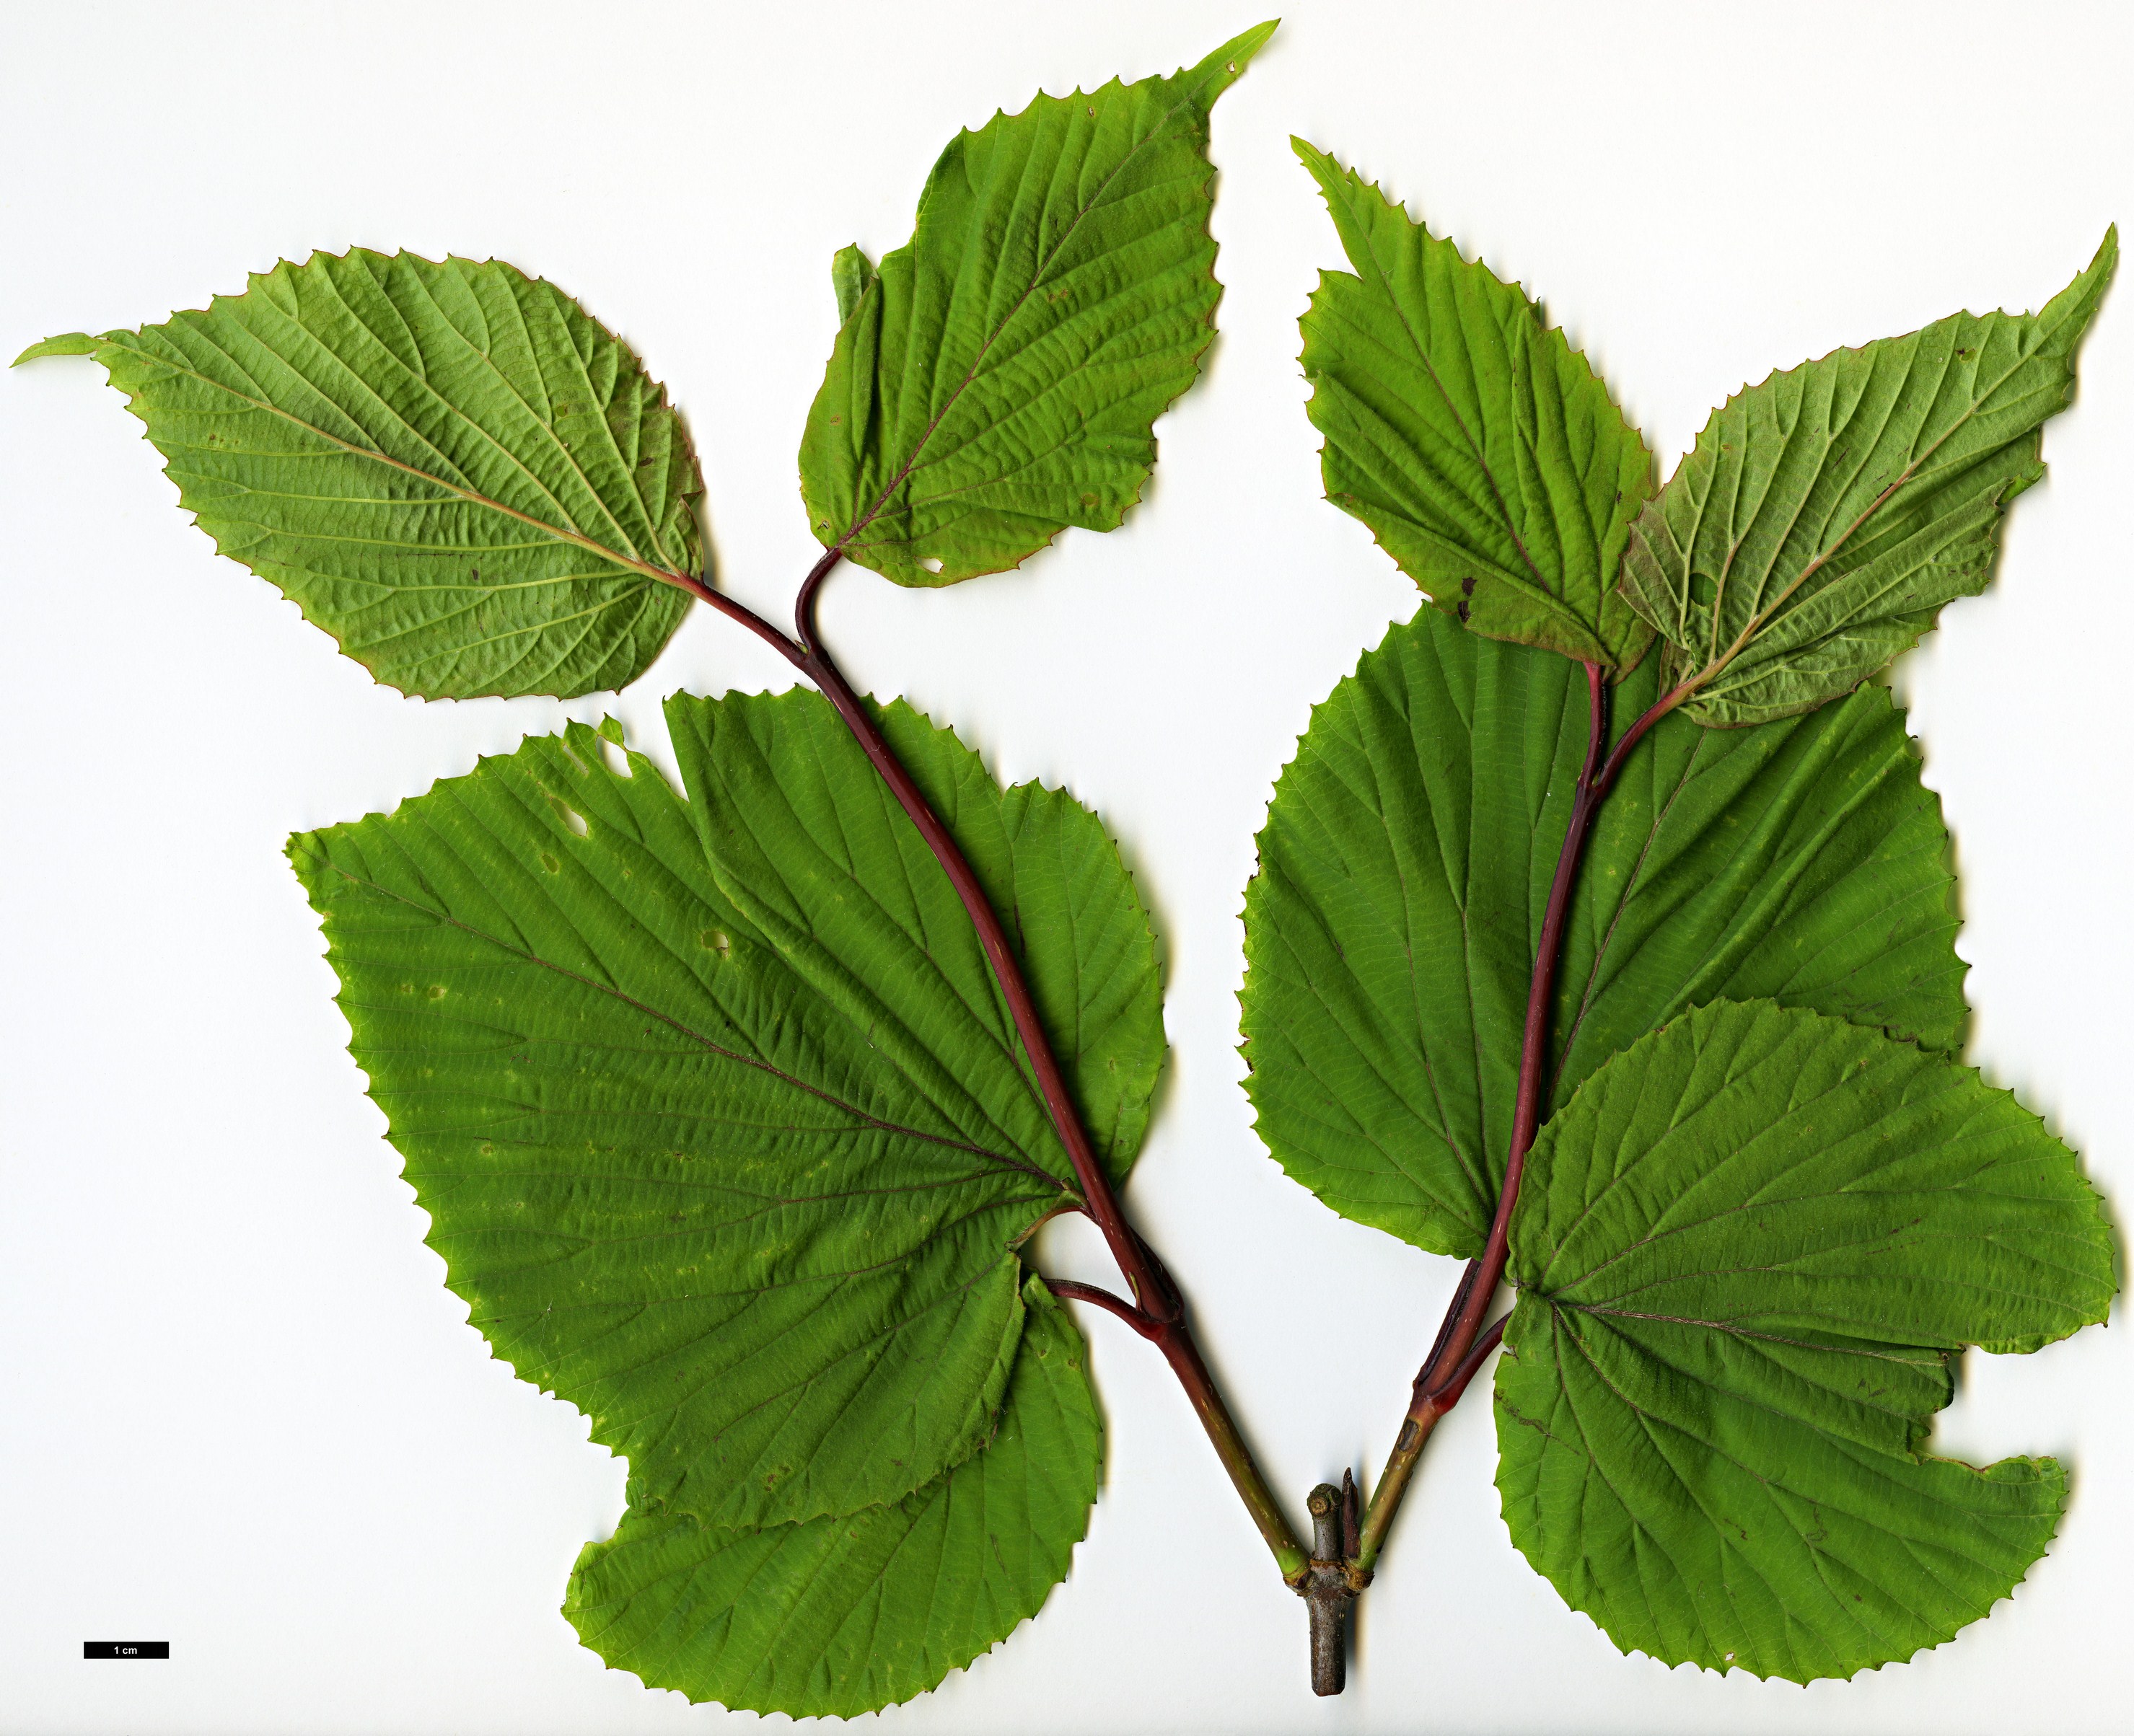 High resolution image: Family: Adoxaceae - Genus: Viburnum - Taxon: brachyandrum